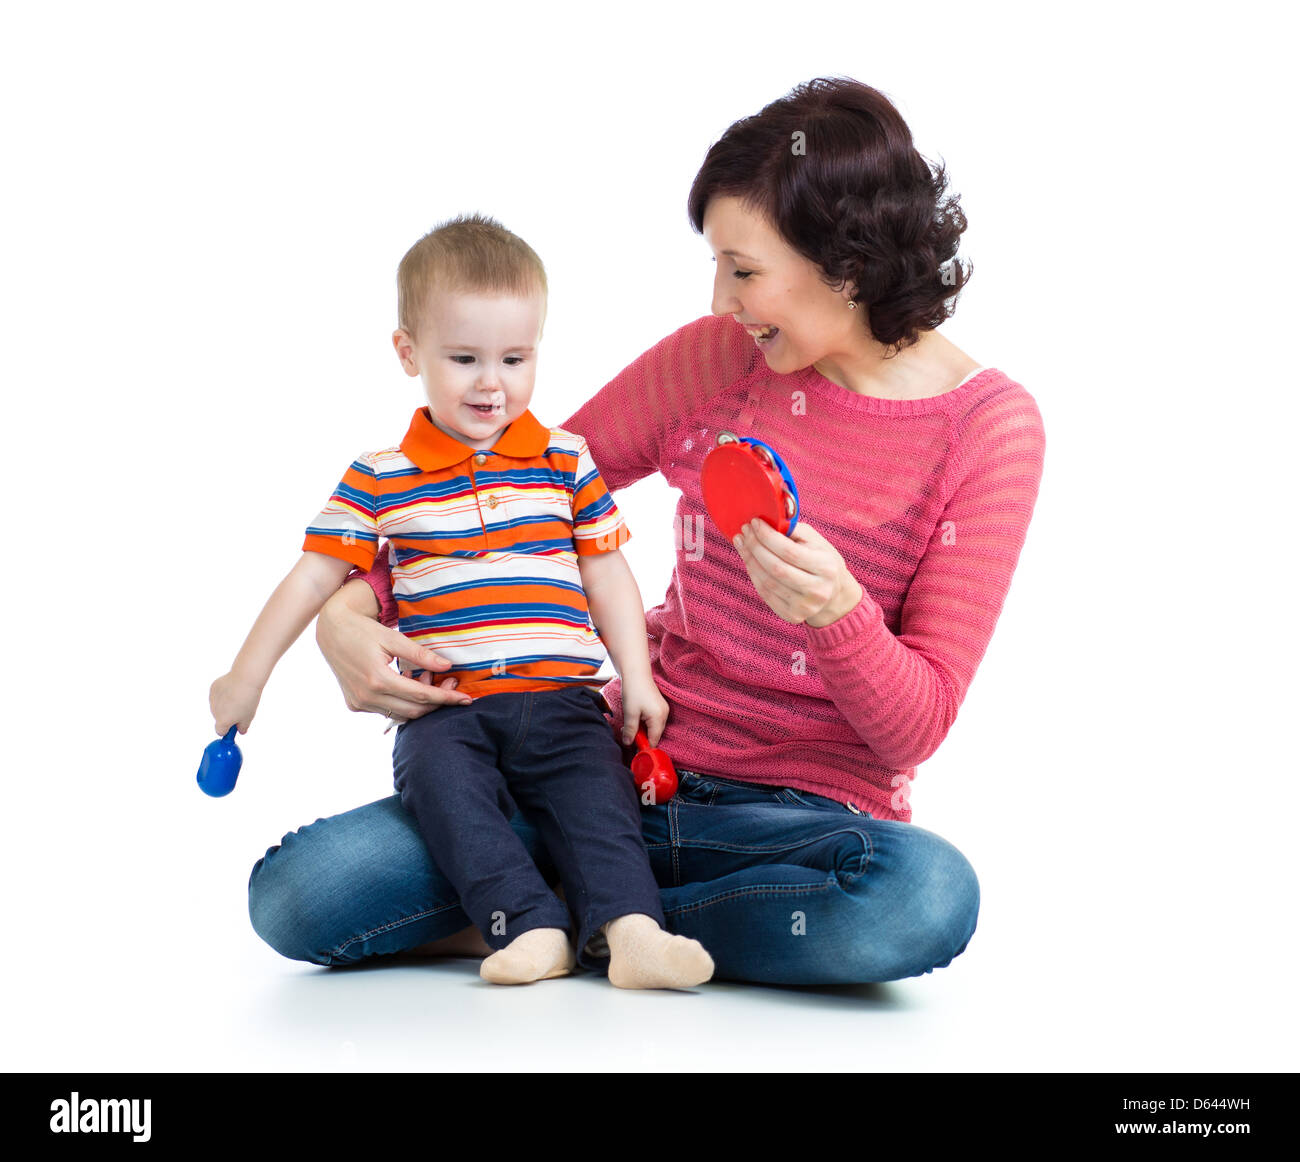 Mère et bébé garçon s'amusant avec des jouets musicaux. Isolé sur fond blanc Banque D'Images